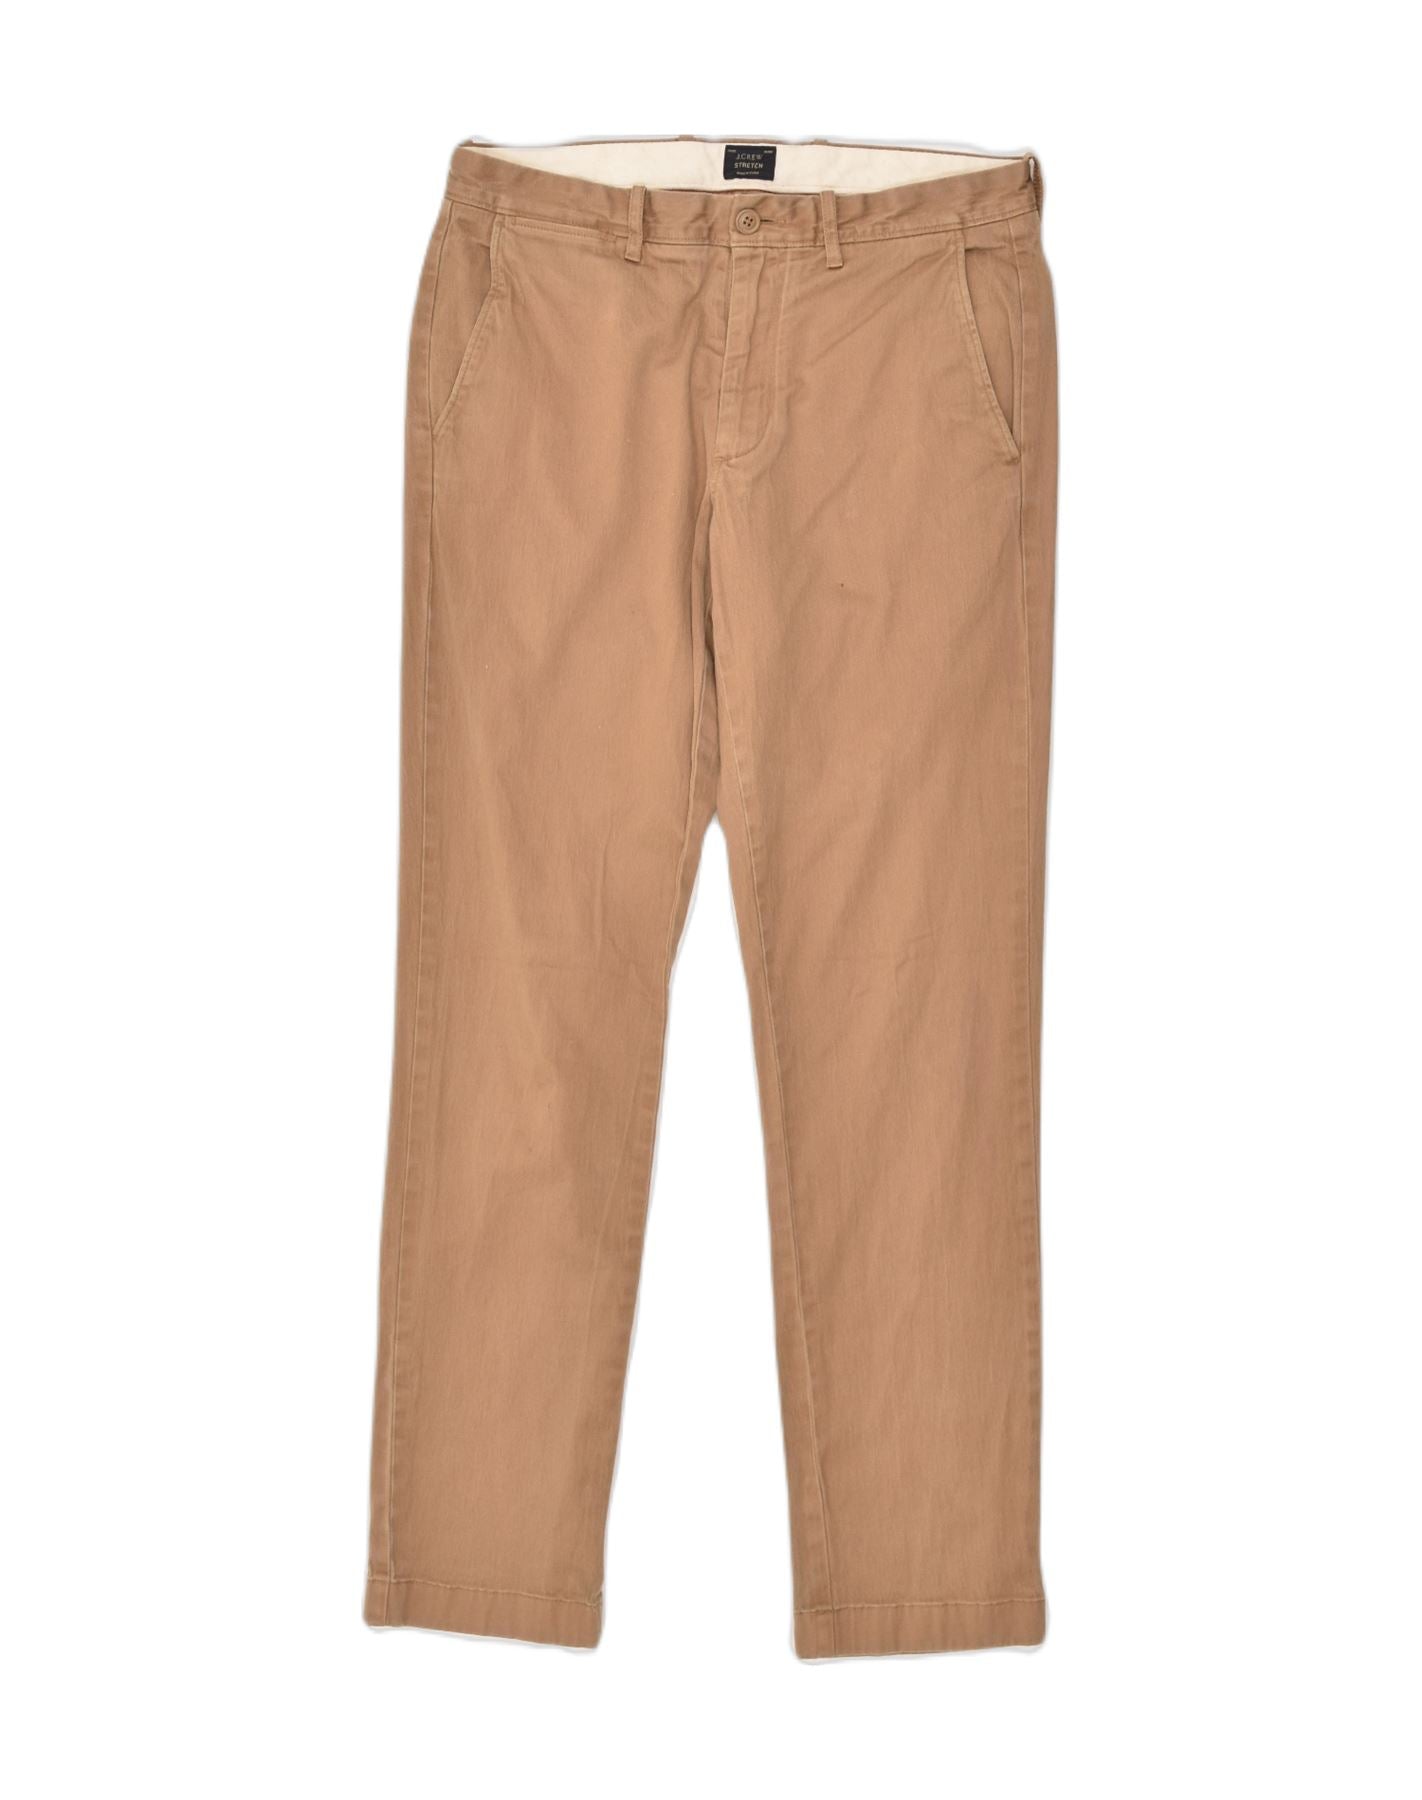 J.Crew Point Sur seaside pant | Linen pants women, Pants for women, Linen  pants